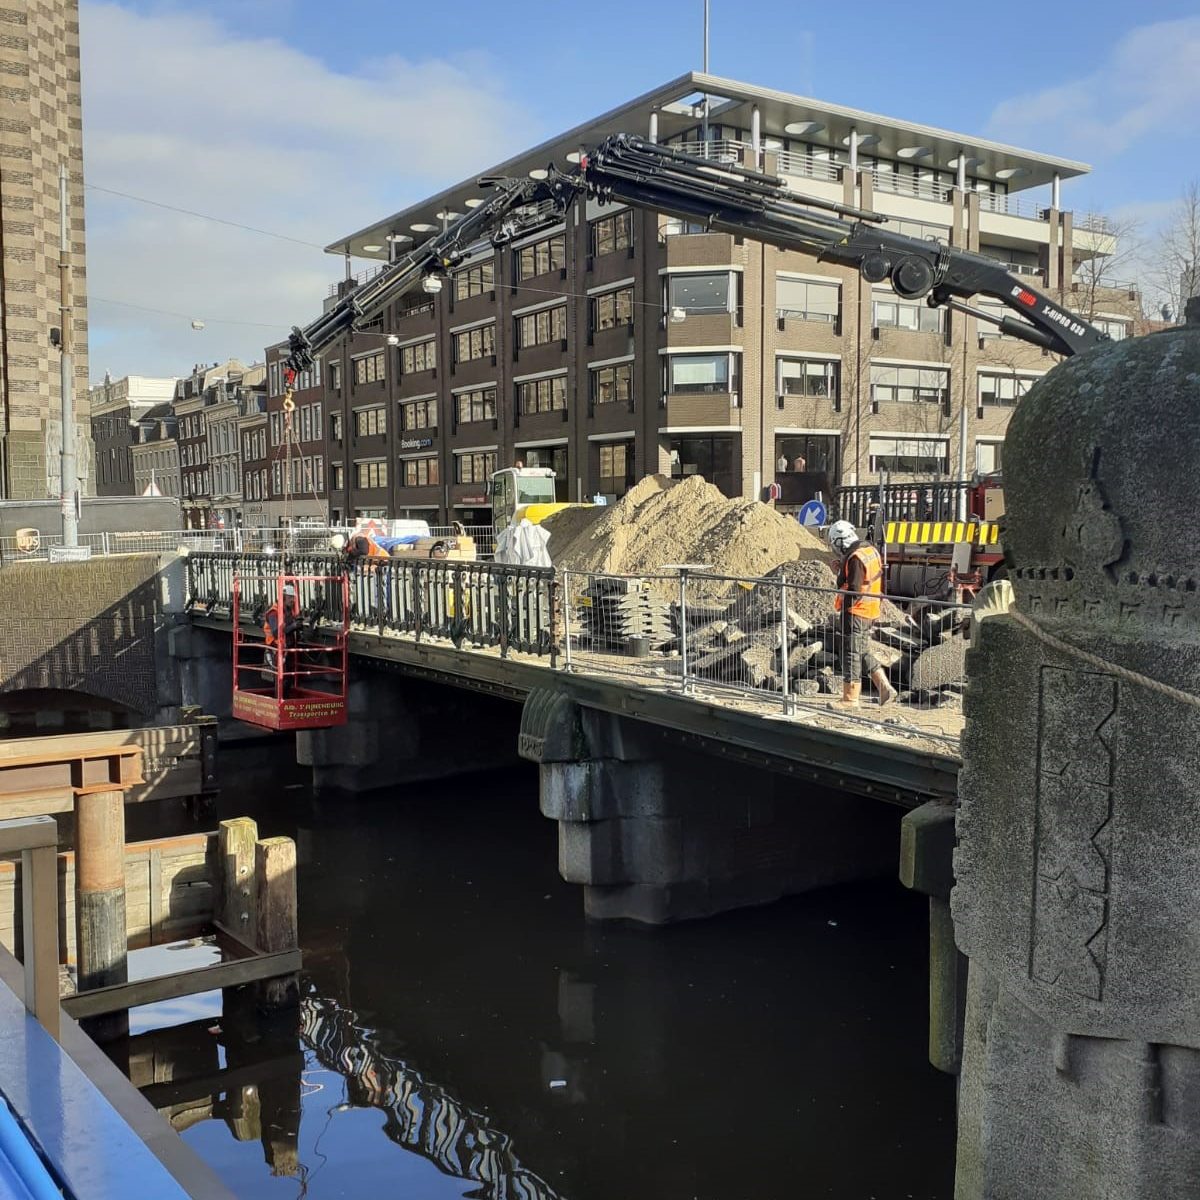 Demontage bruggen rode loper amsterdam